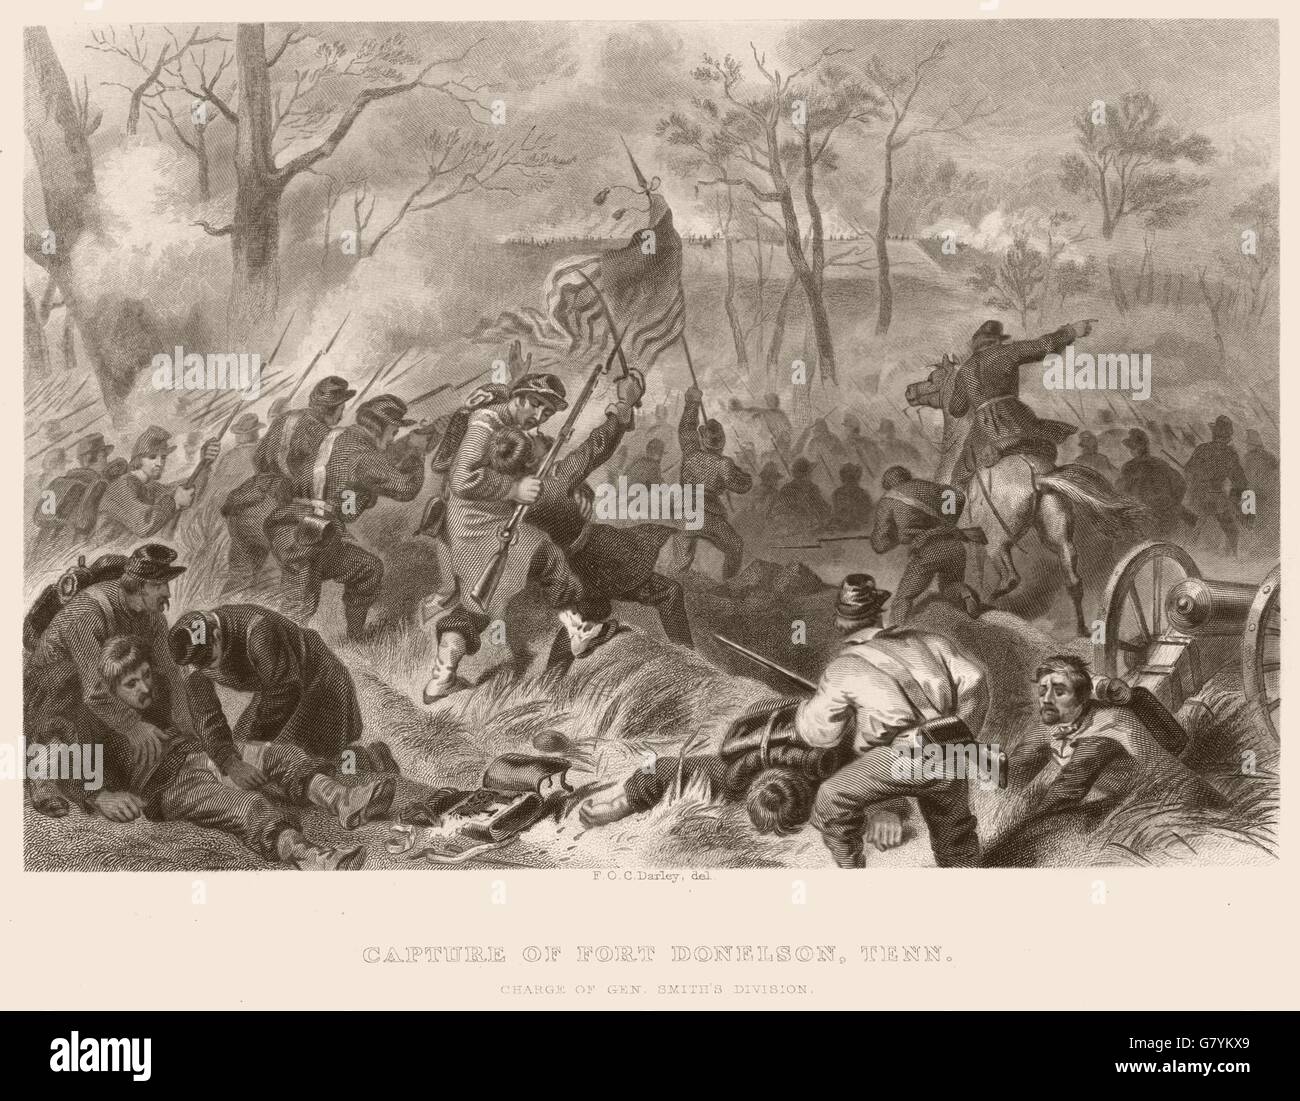 UNS BÜRGERKRIEG. Erfassung von Fort Donelson, Tennessee. Gen Sie Smiths Div kostenlos, 1864 Stockfoto